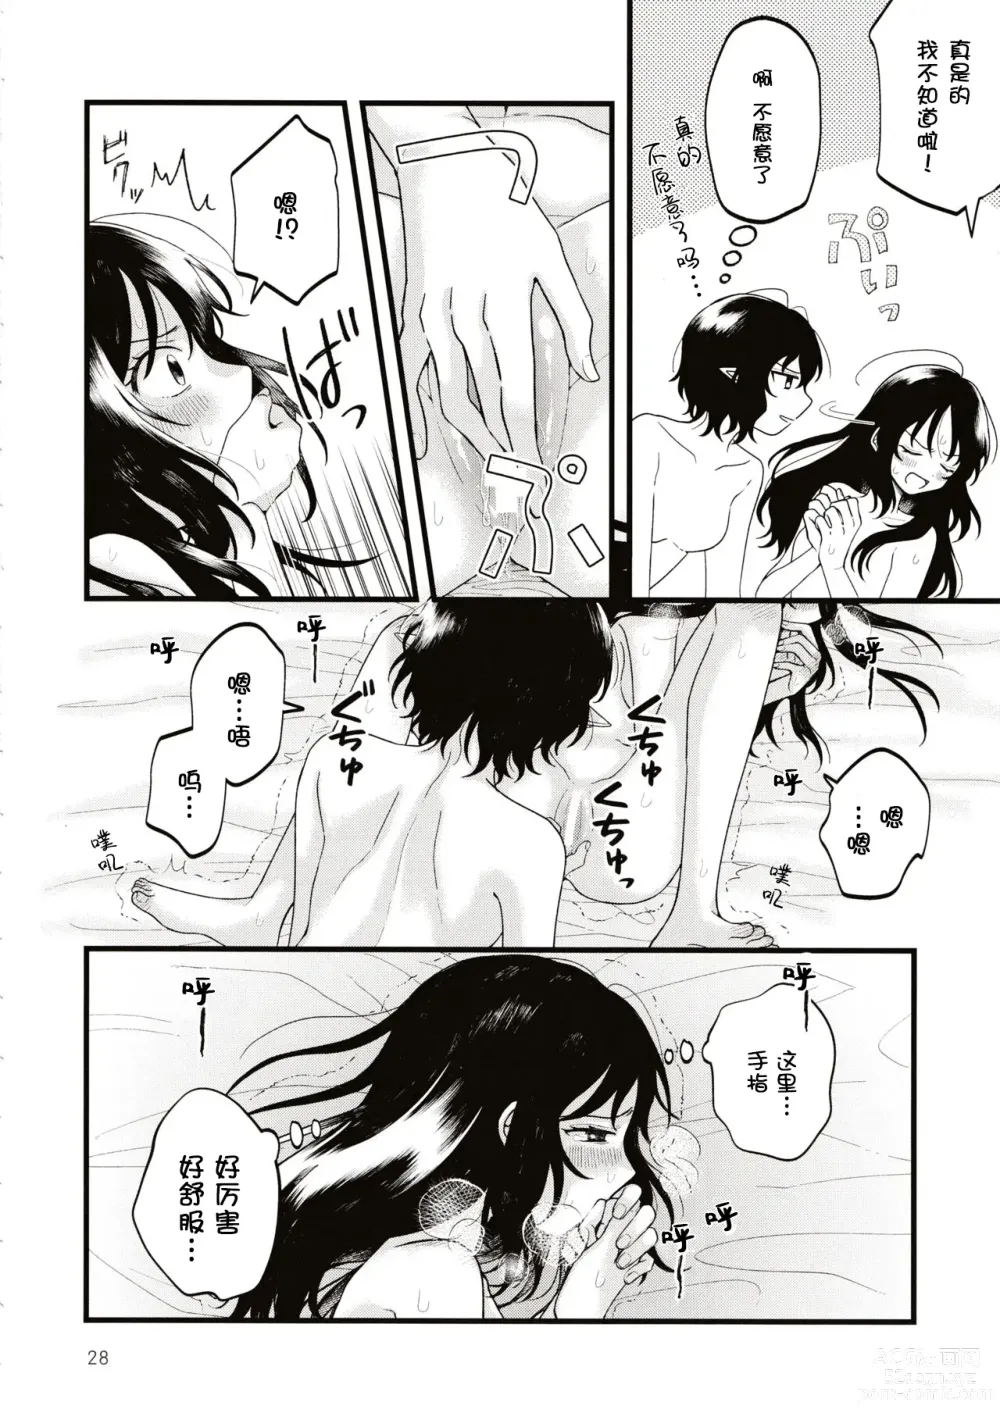 Page 27 of doujinshi Rubeus no Kankai